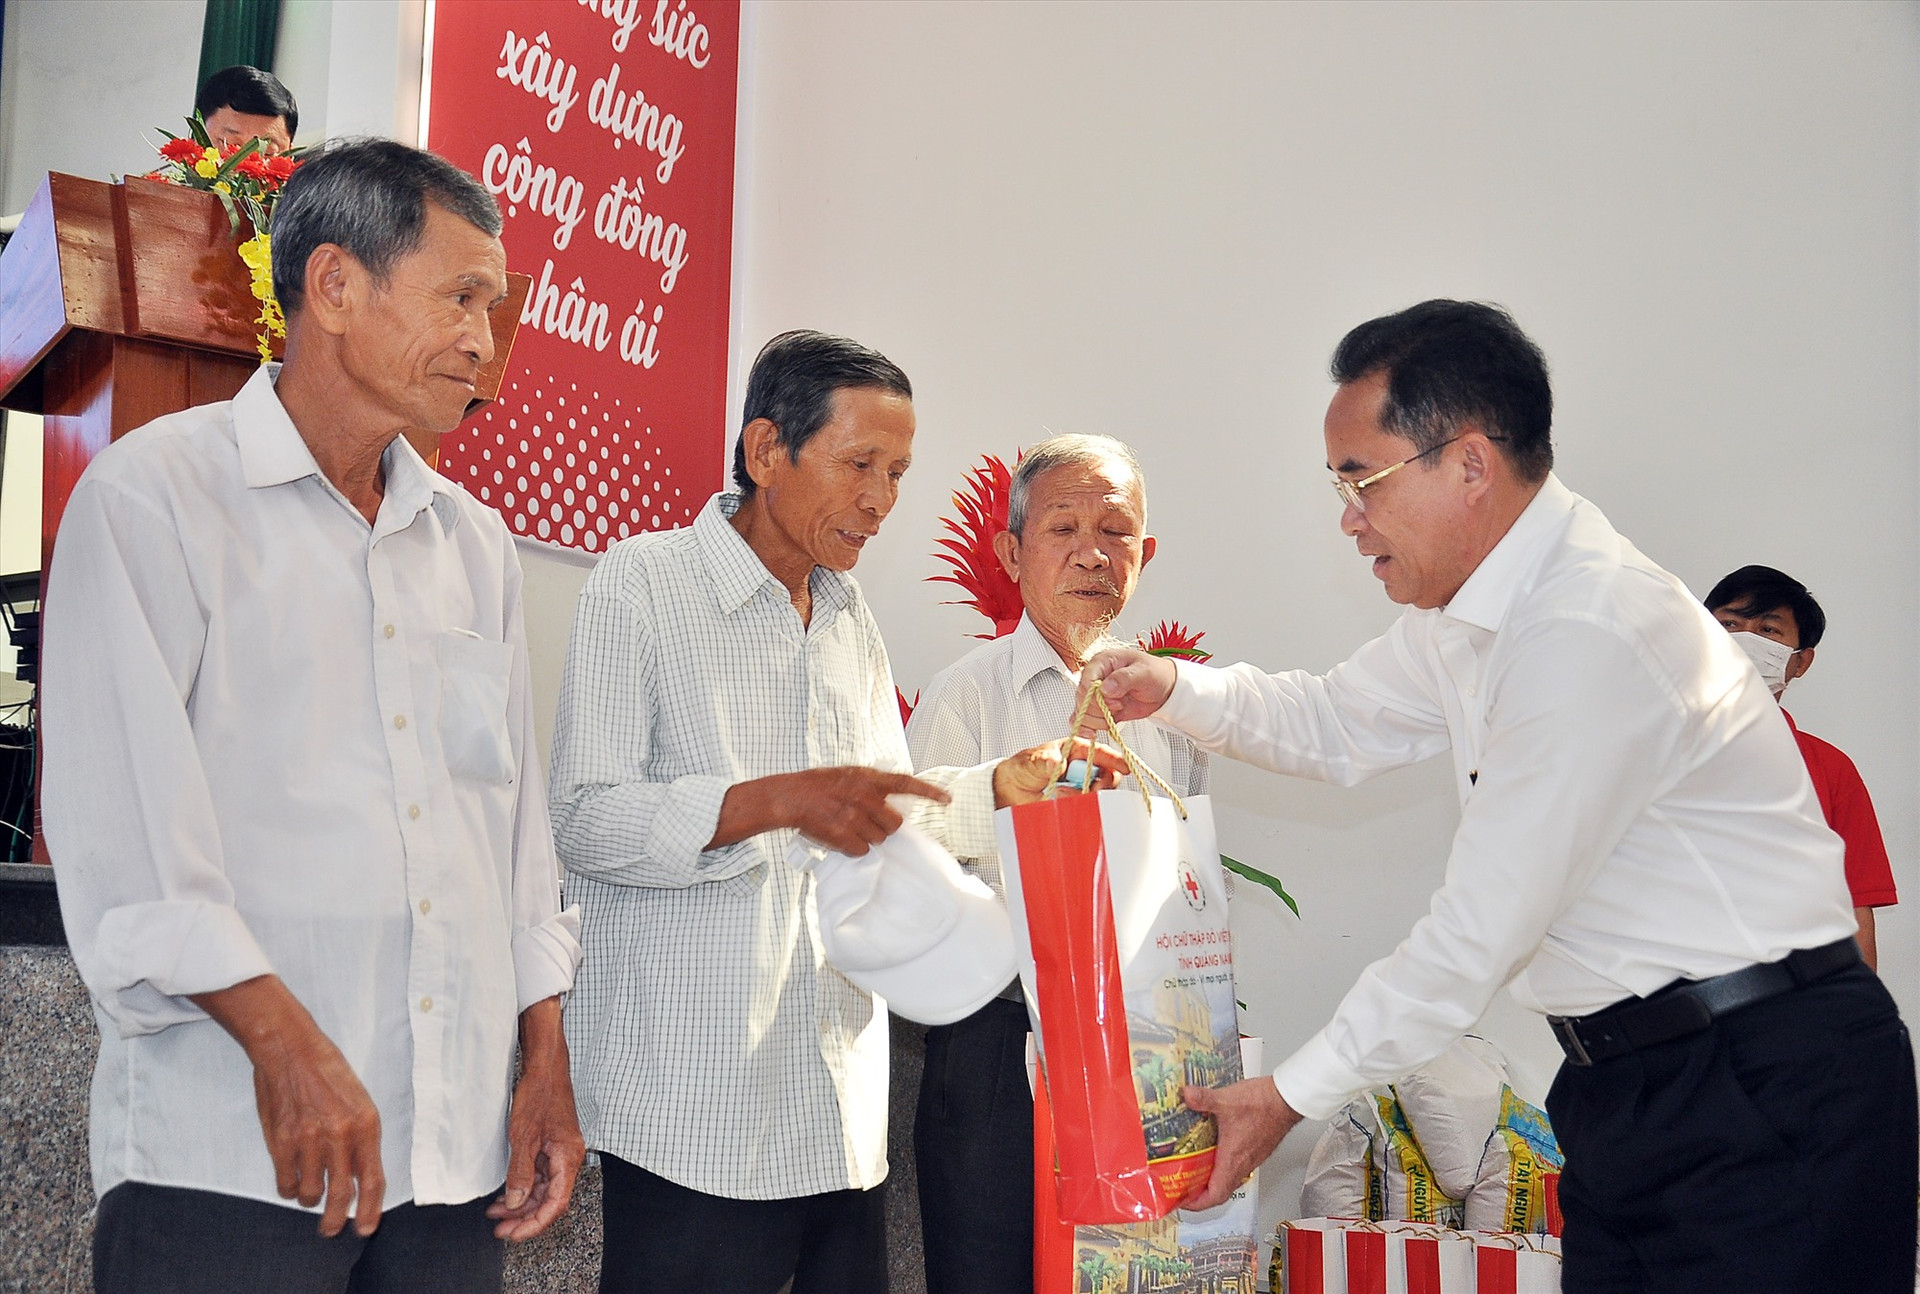 Phó Chủ tịch UBND tỉnh Trần Anh Tuấn trao quà cho các hộ nghèo, người có hoàn cảnh khó khăn của xã Bình Nam tại lễ phát động Tháng nhân đạo. Ảnh: V.A